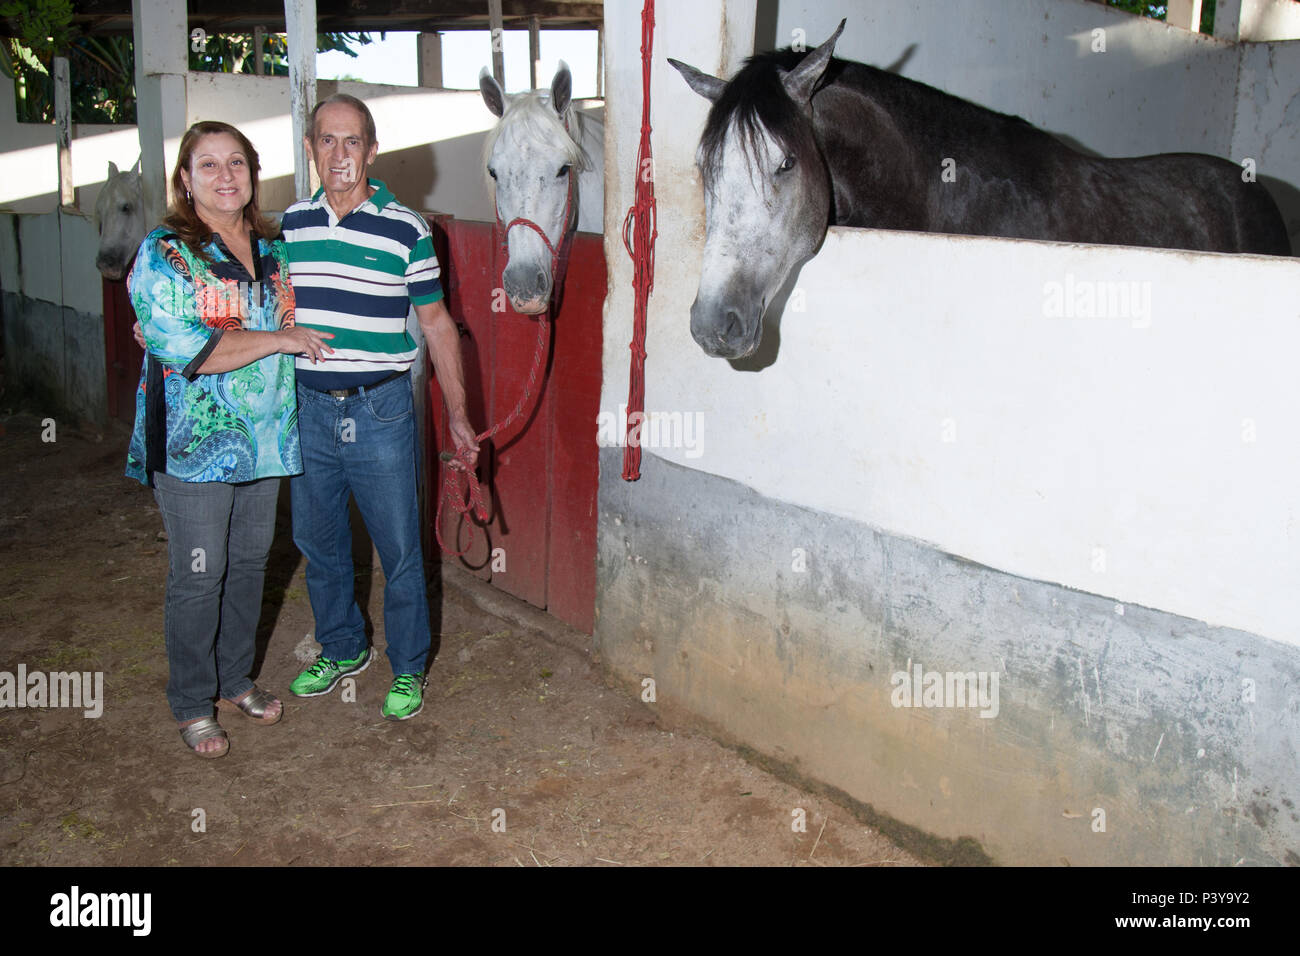 O criador de cavalos Vitélio Biazin, 68 anos, e sua esposa, Rosamaria Maltes de Freitas Biazin, 61, posam em sua propriedade rural de 7 hectares na Bahia. Vitélio nasceu no município de Severino de Almeida (RS), e migrou para Lauro de Freitas (BA), em 1983. Stock Photo